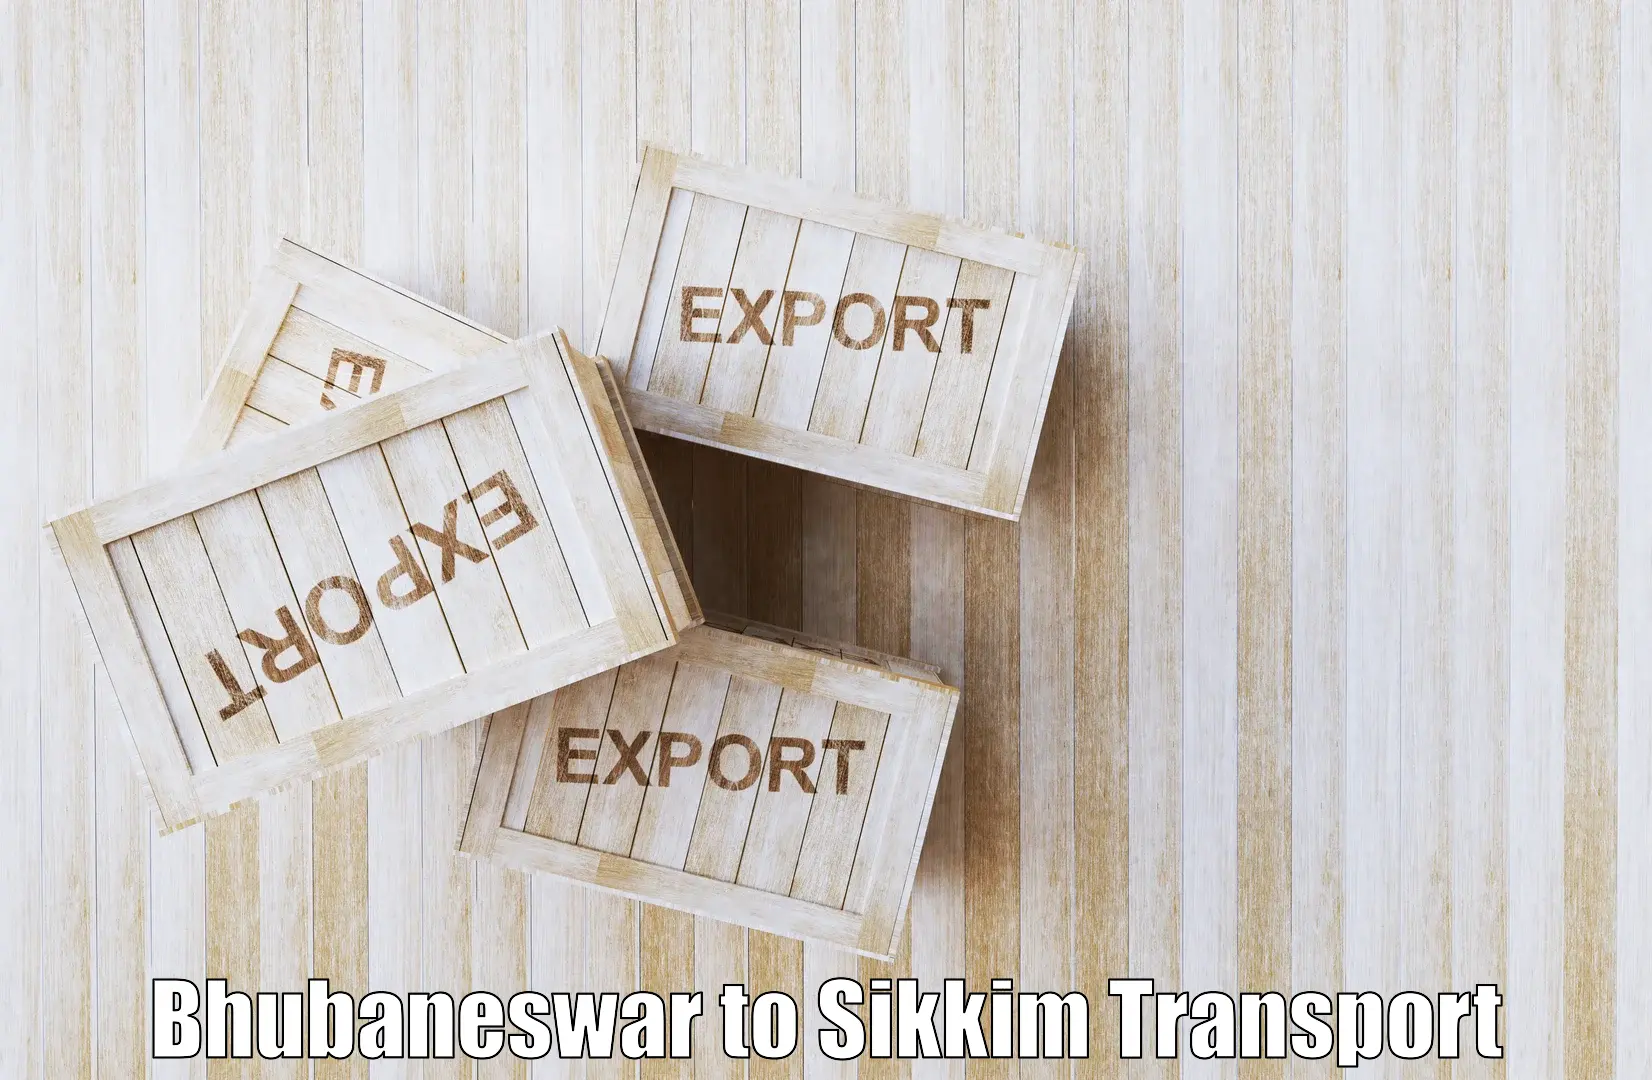 Shipping partner Bhubaneswar to East Sikkim